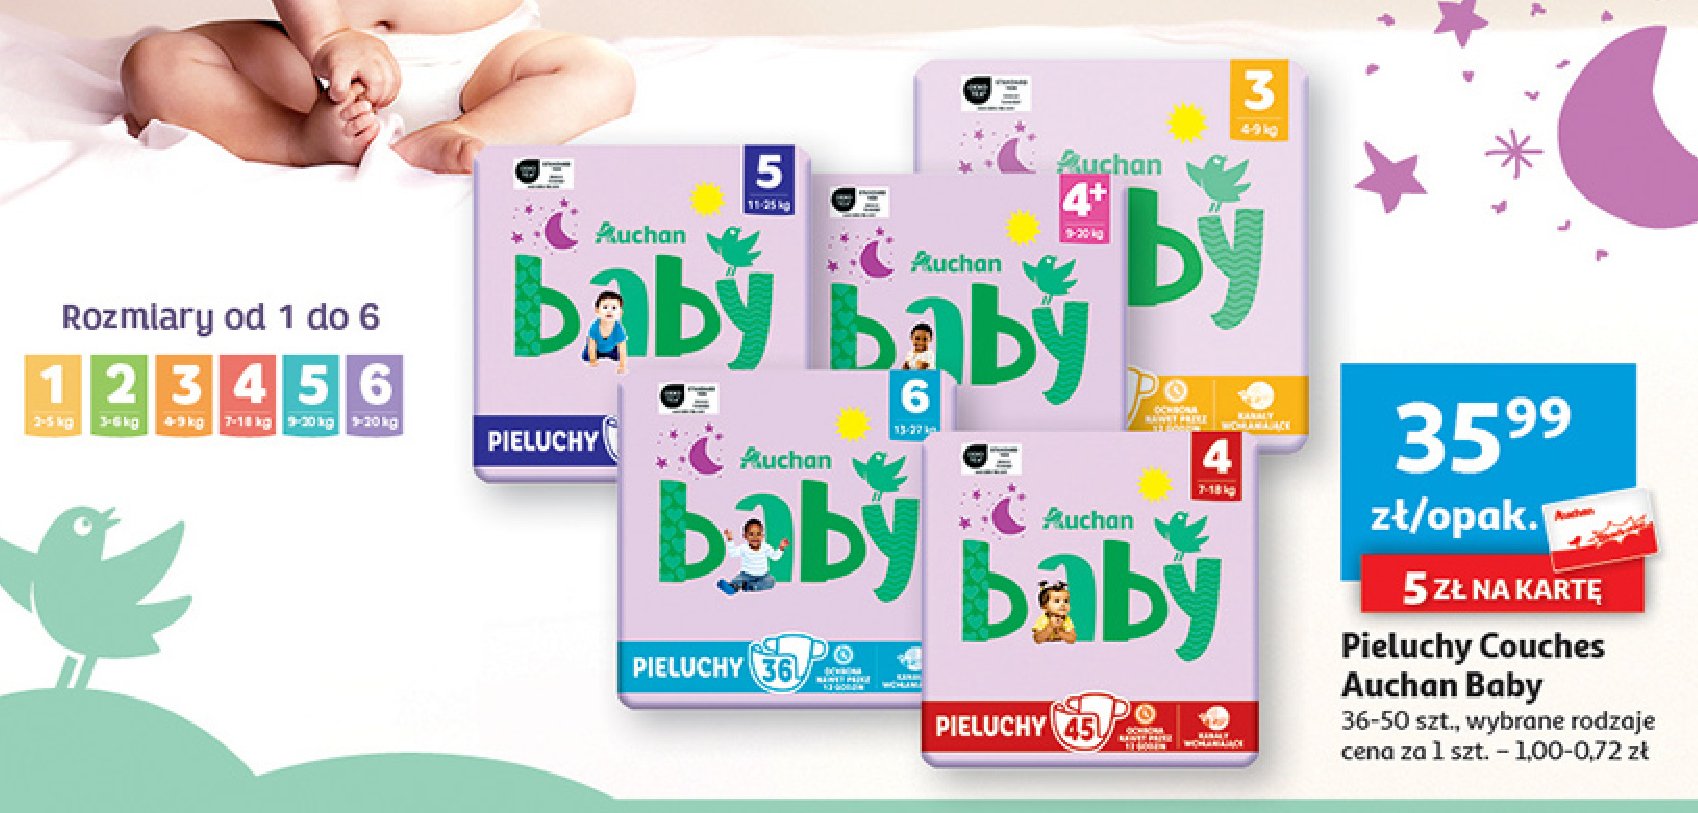 Pieluchy midi 3 Auchan baby promocja